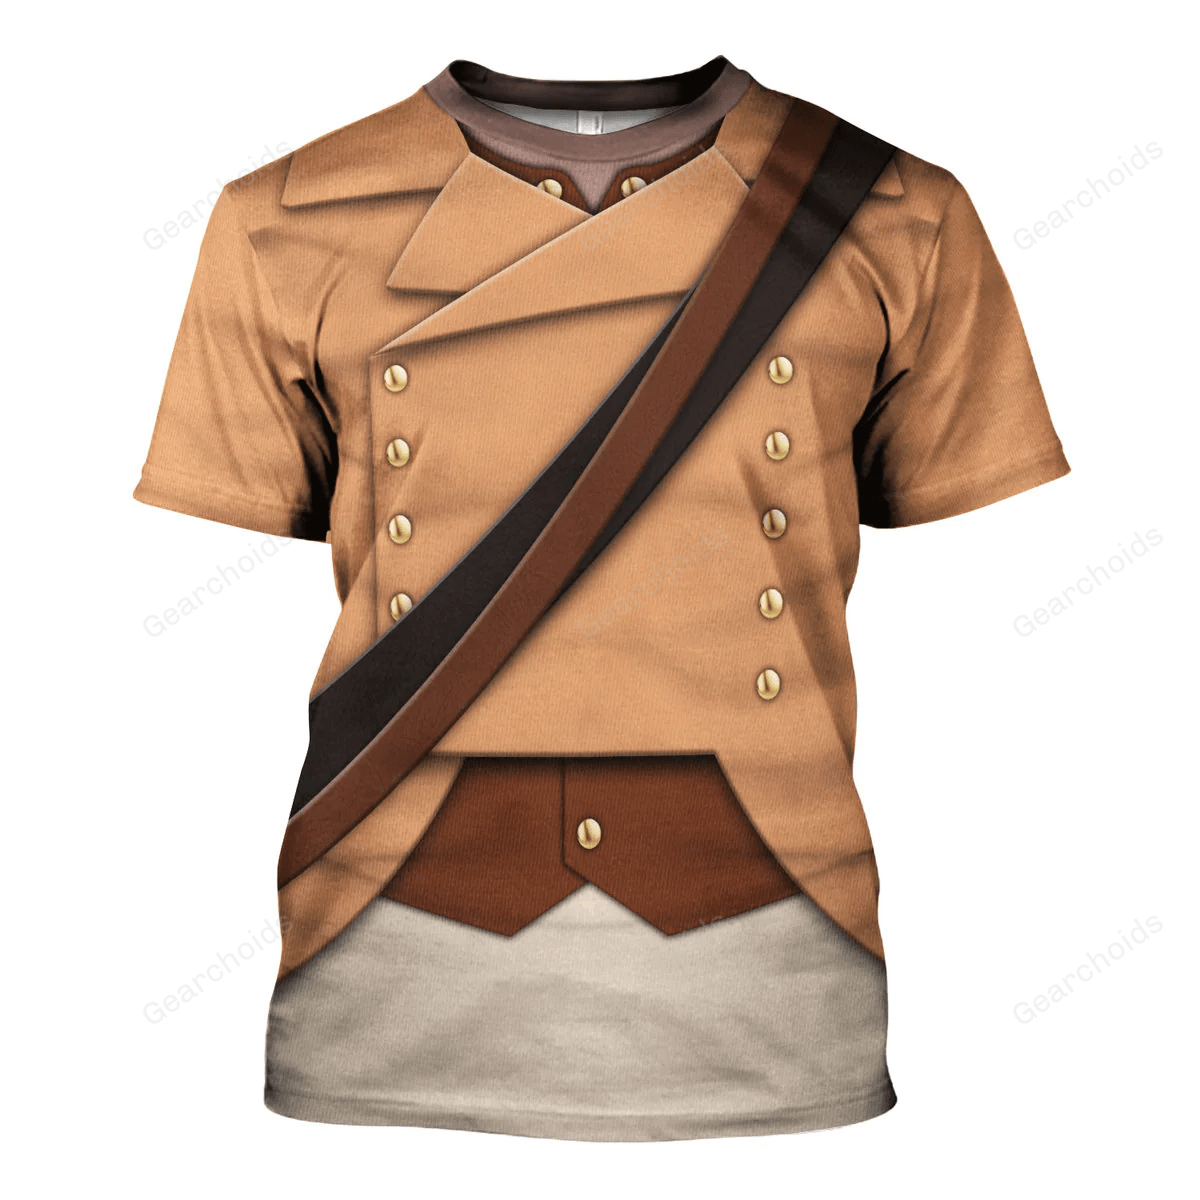 Colonial Militia-1776 Uniform T-Shirt